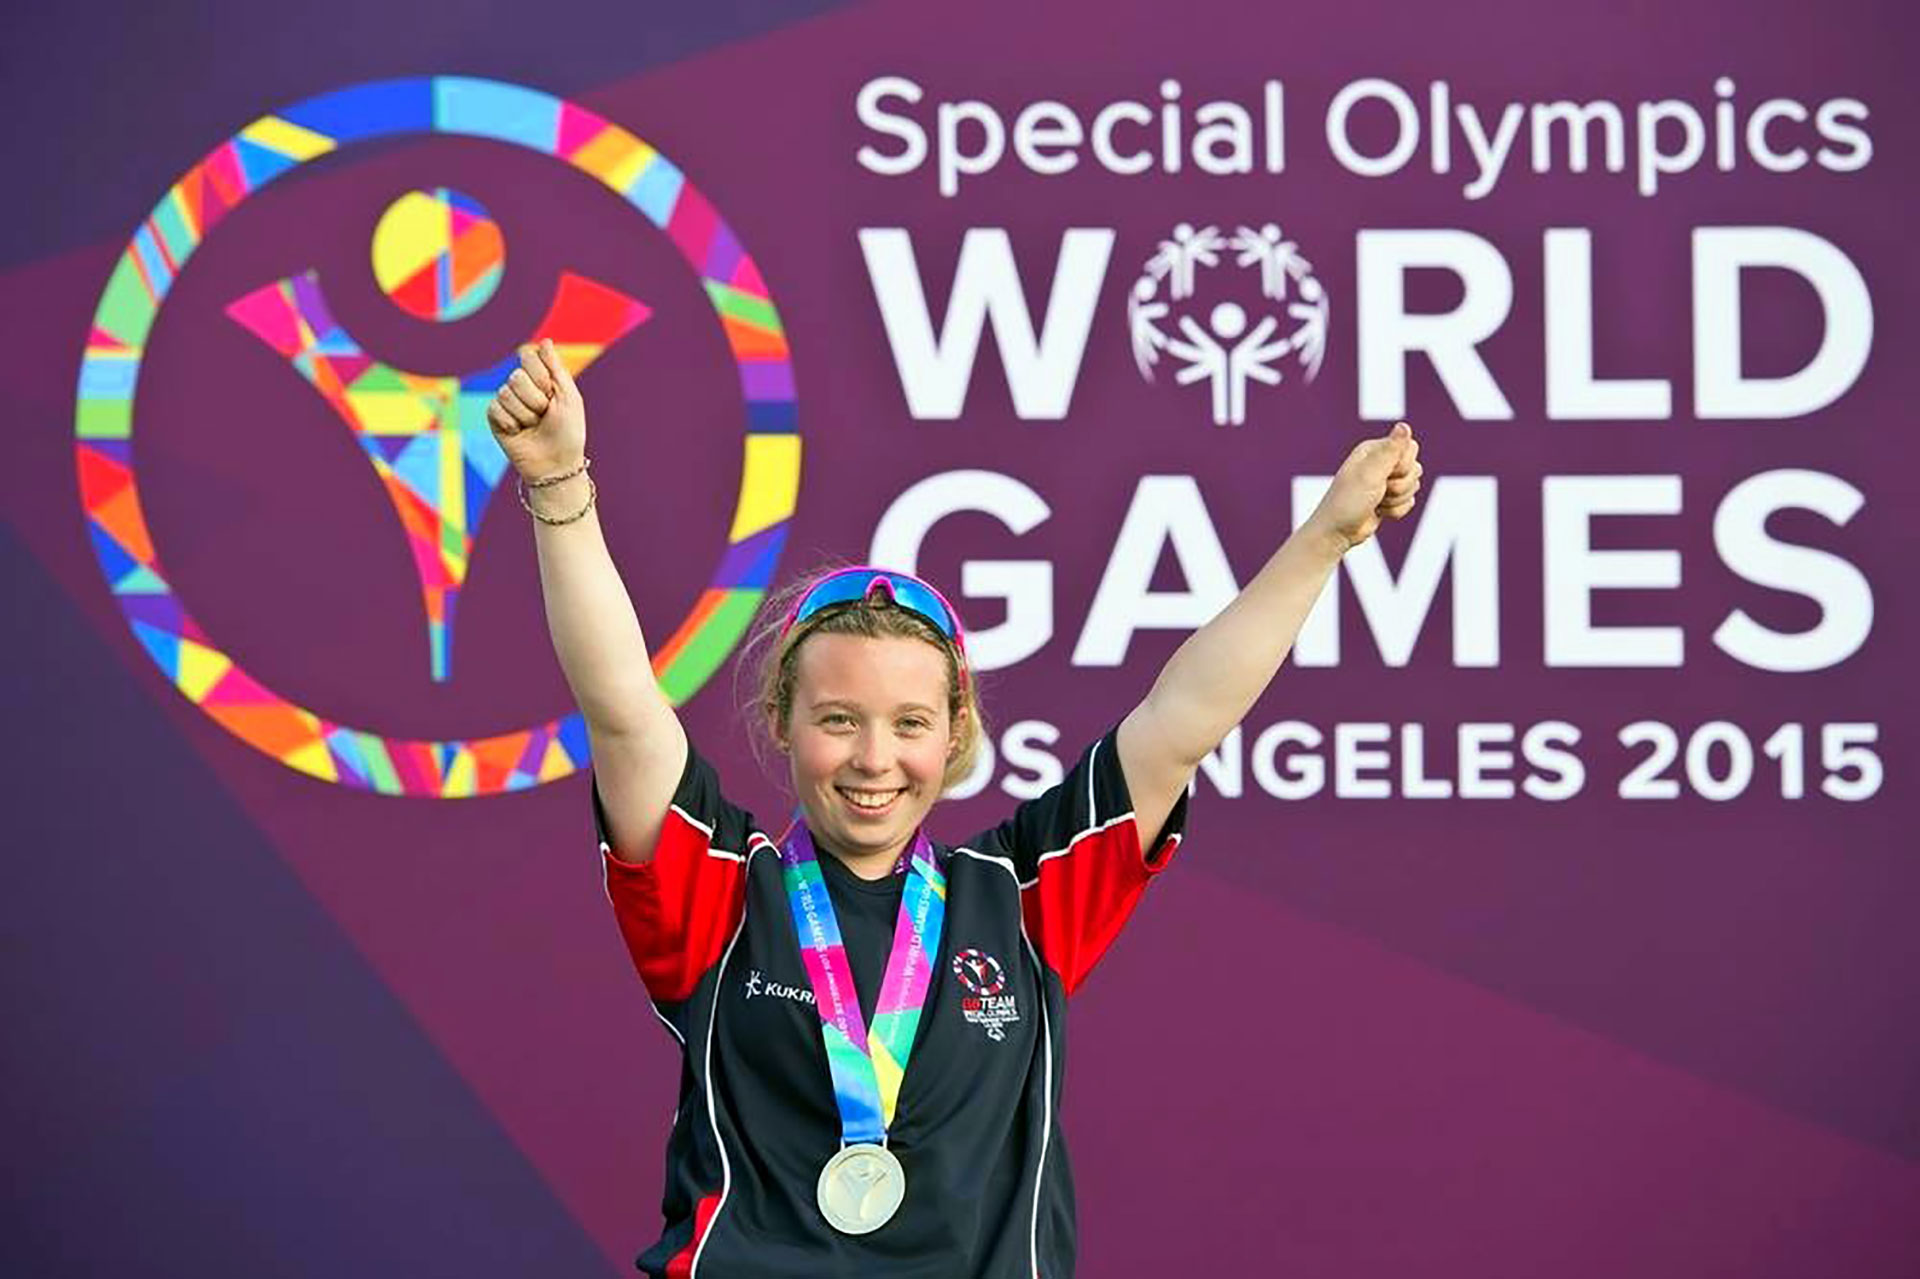 Kiera Byland Special Olympics